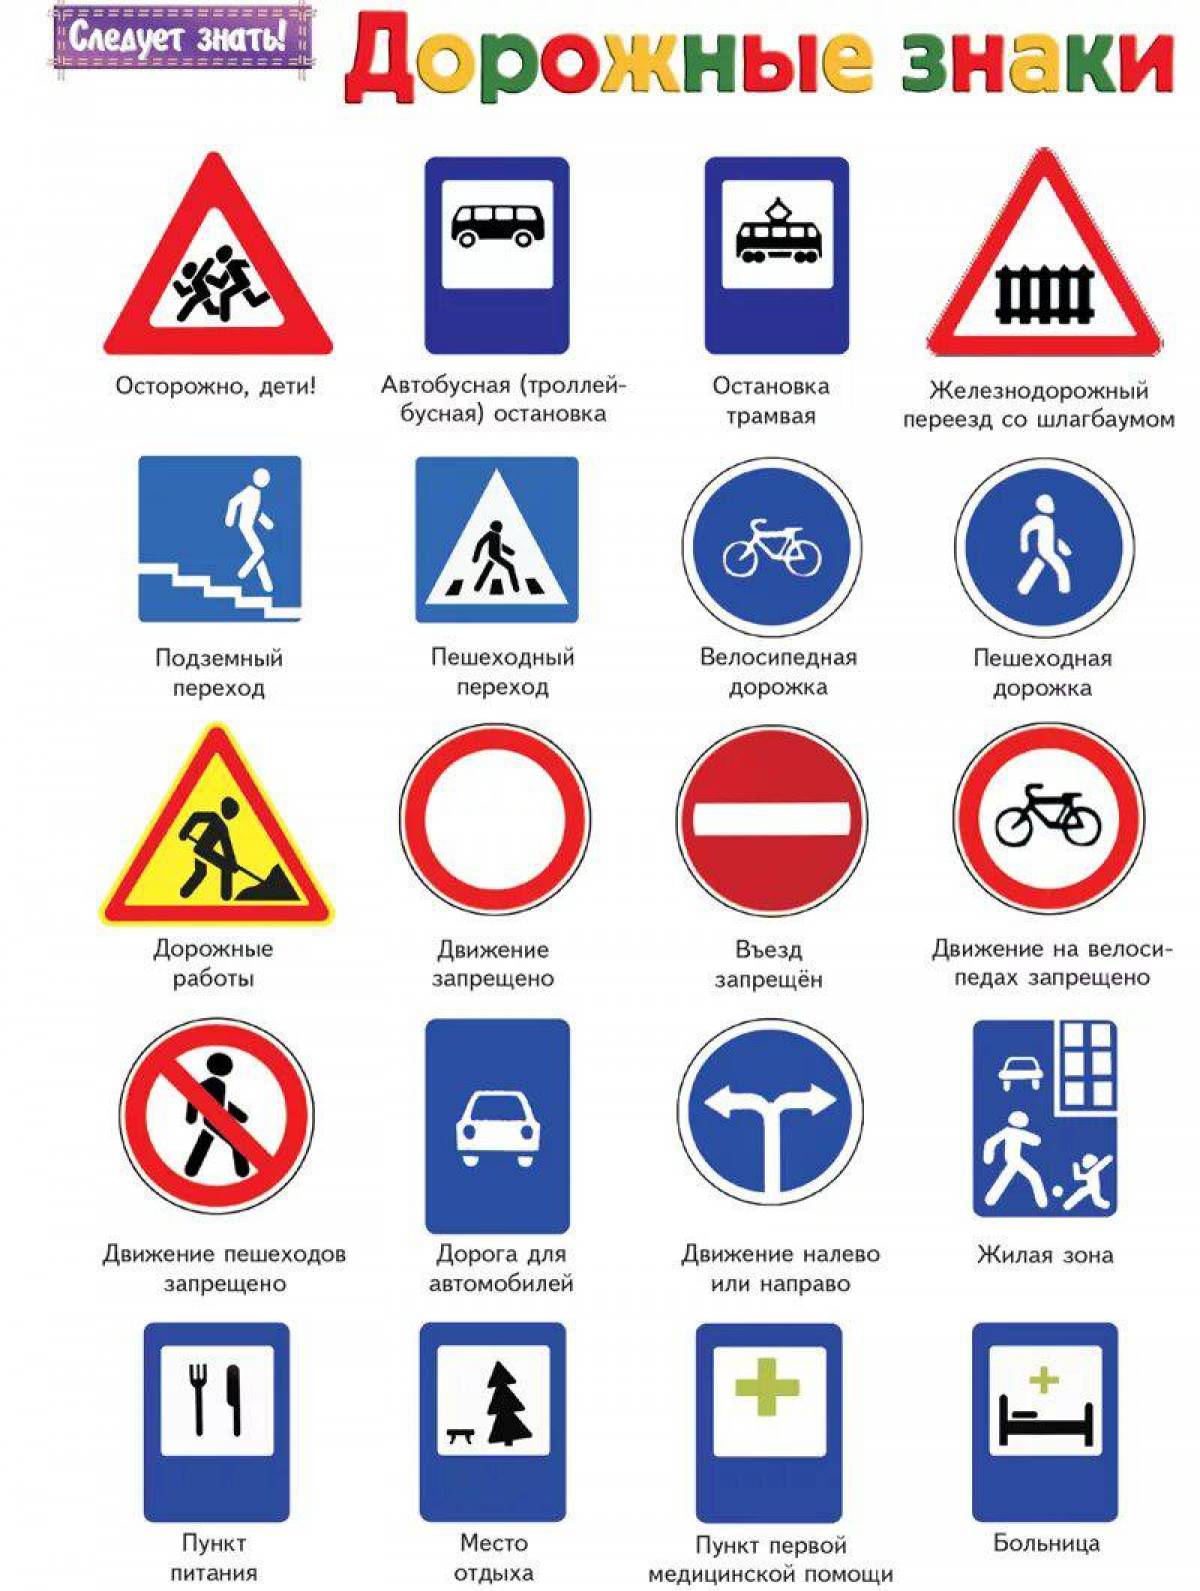 Знаки дорожного движения с пояснениями и картинками. Что обозначают знаки дорожного движения. Обозначение знаков правил дорожного движения. Дорожные знаки с пояснениями и обозначениями для водителя. Название знаков дорожного движения.